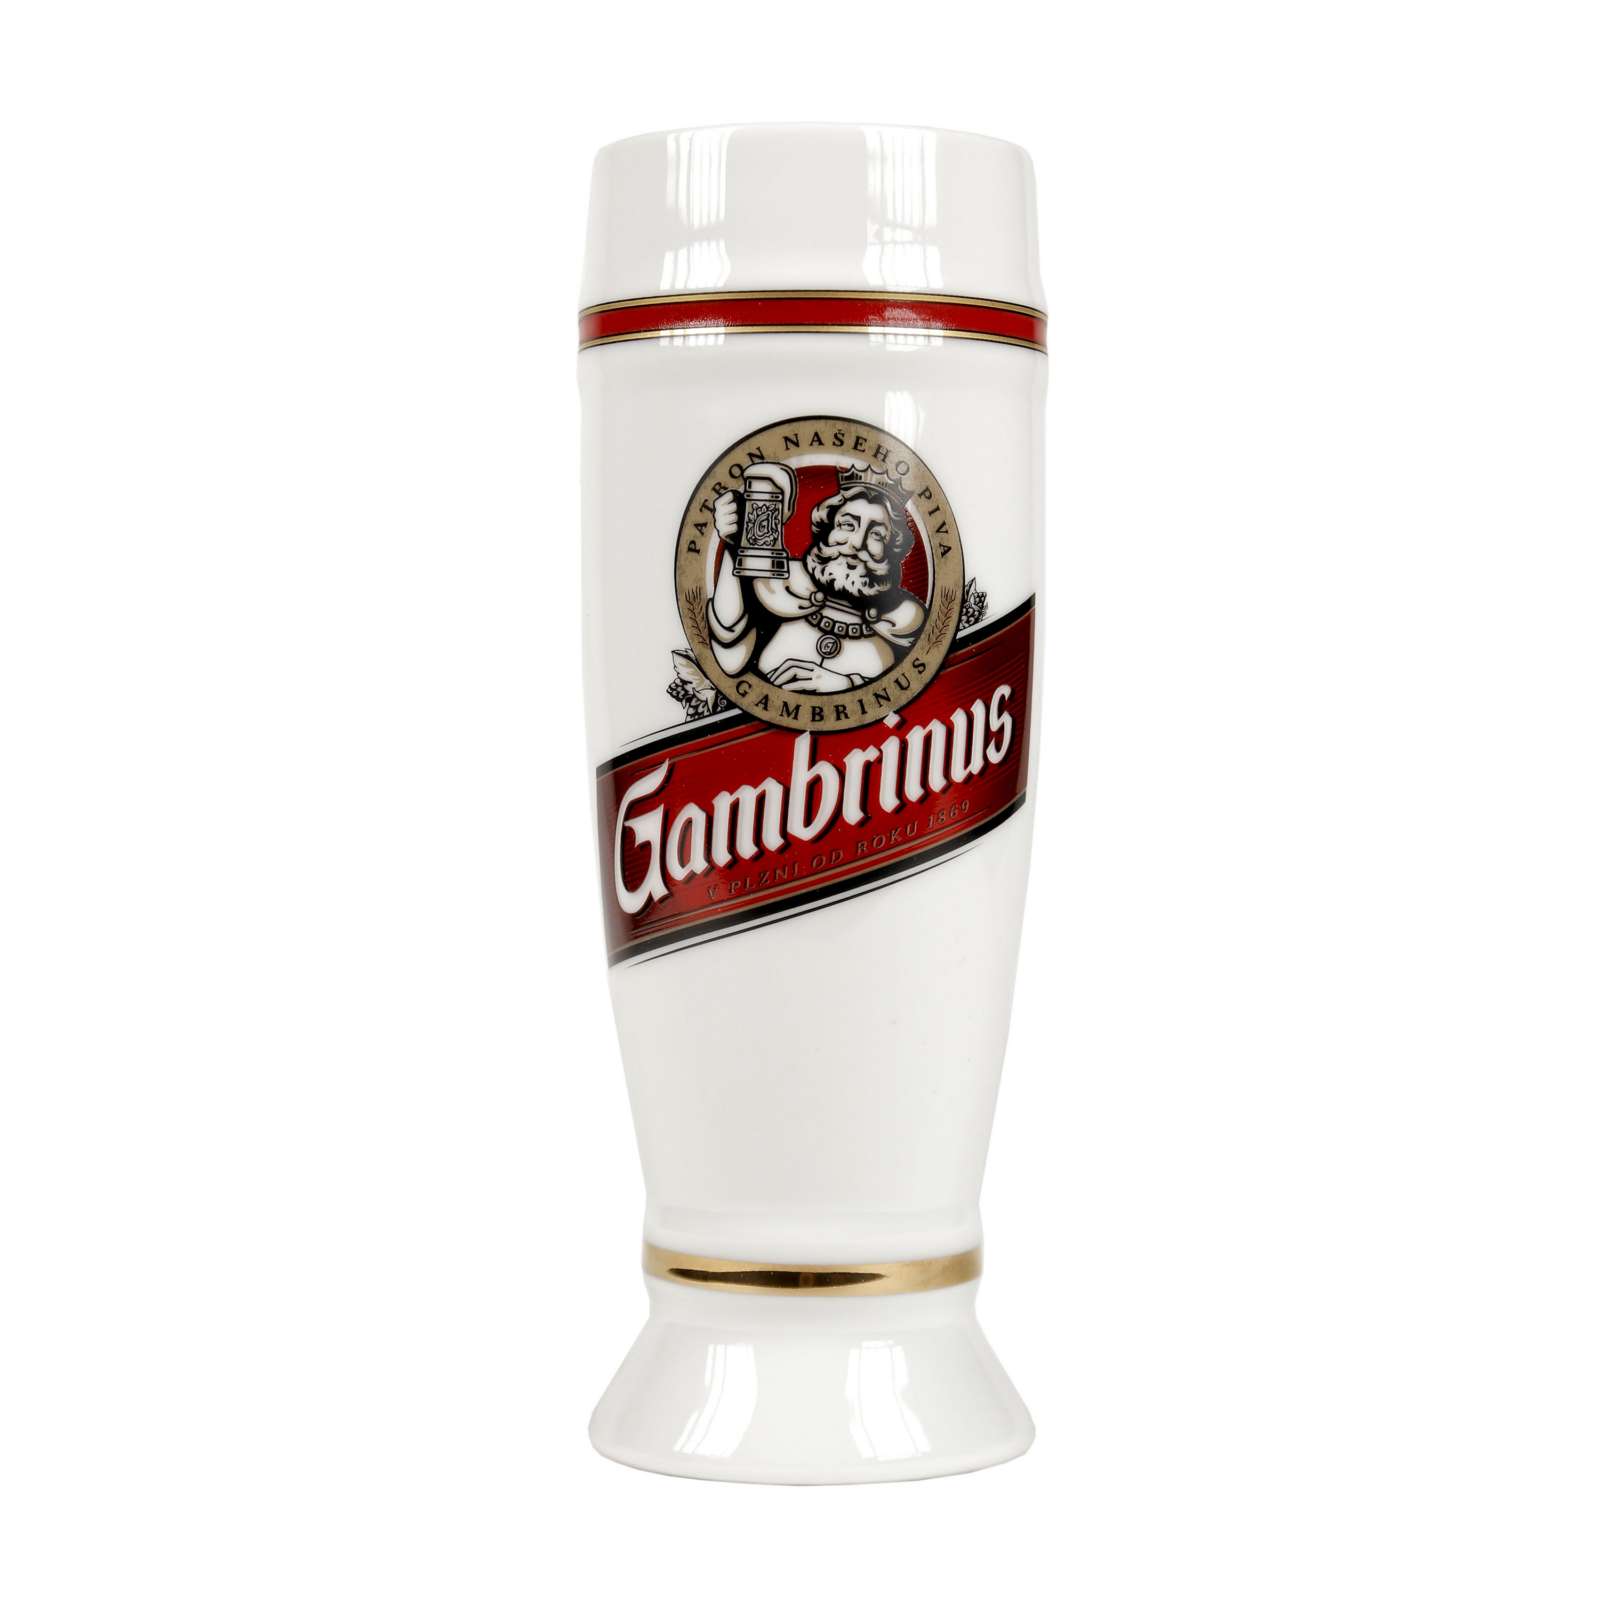 0.2l Gambrinus porcelain cup